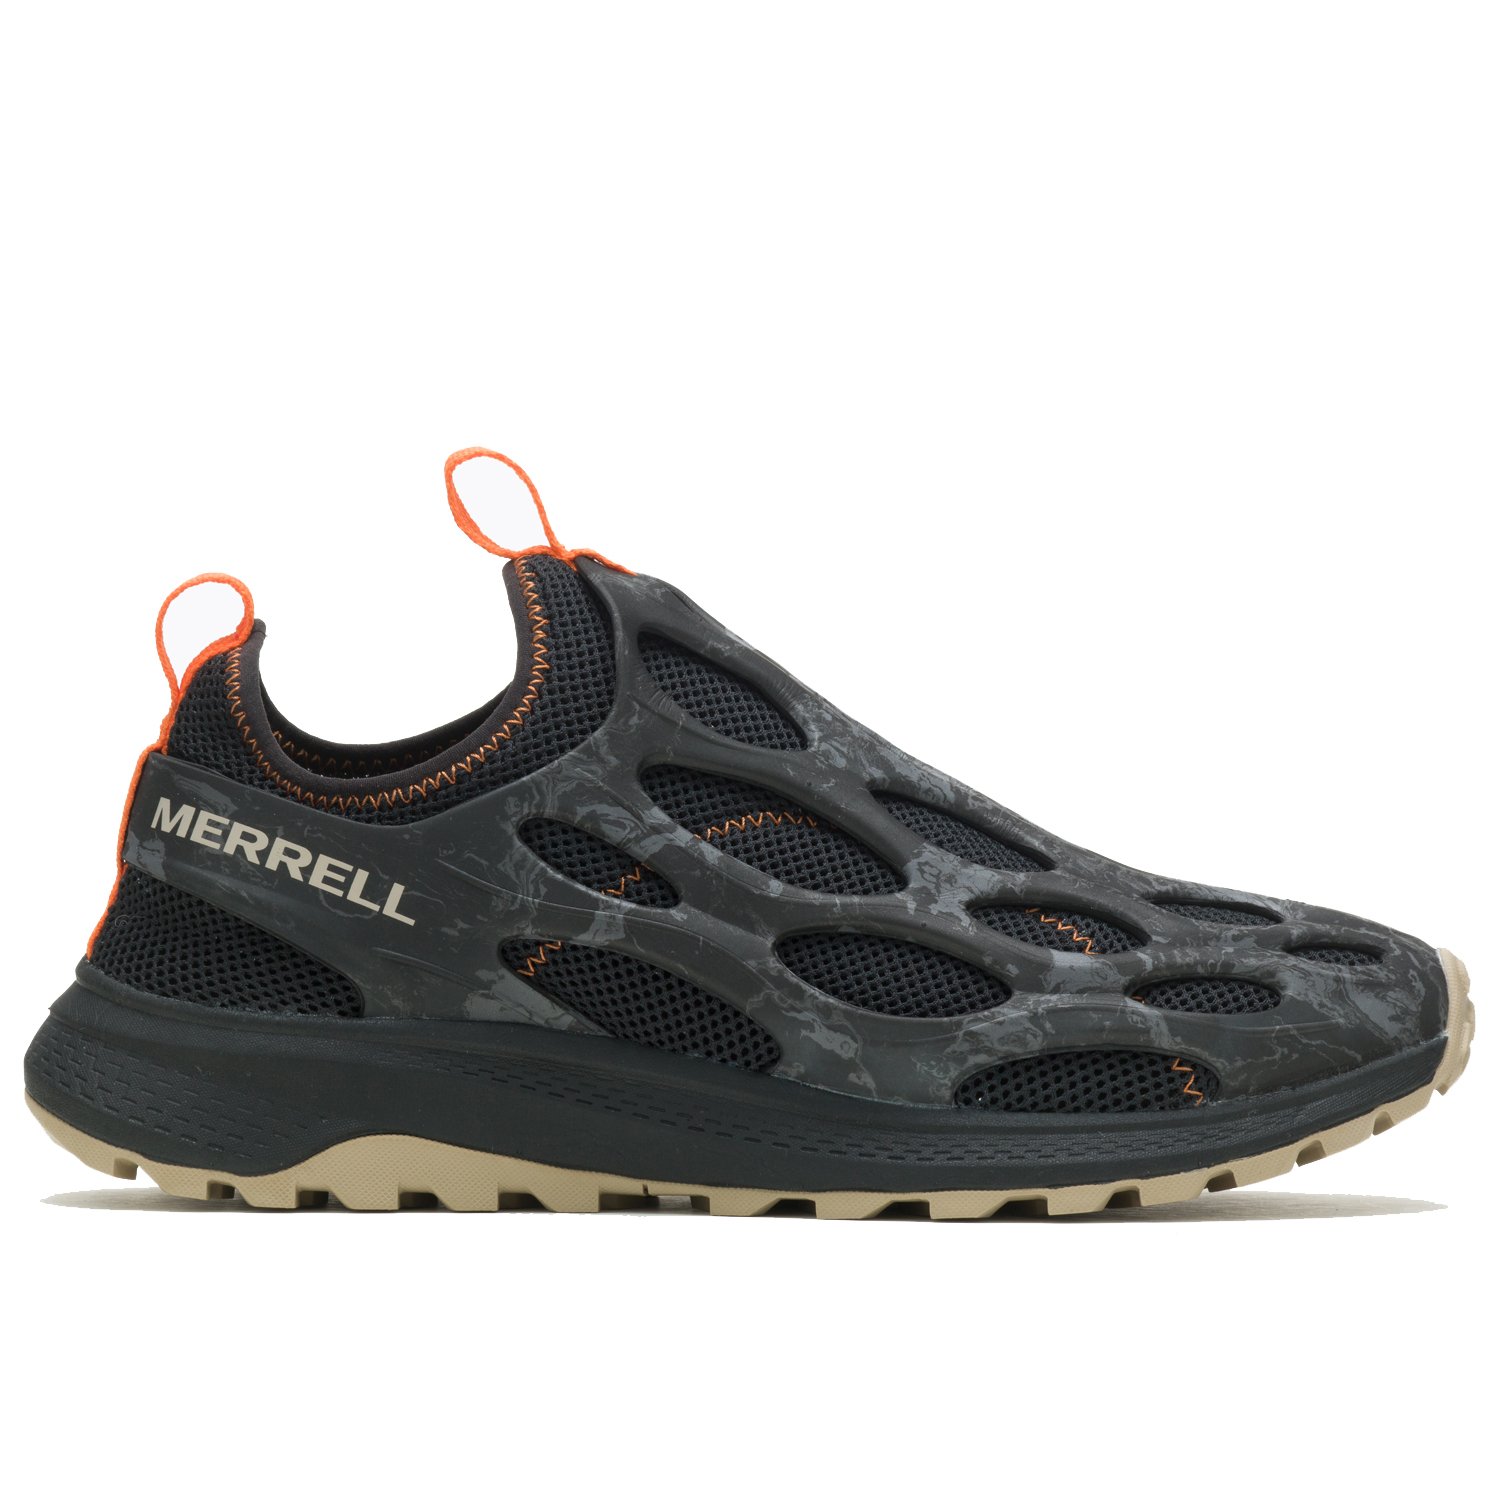 Merrell Hydro Runner Erkek Su Ayakkabısı - Siyah - 1